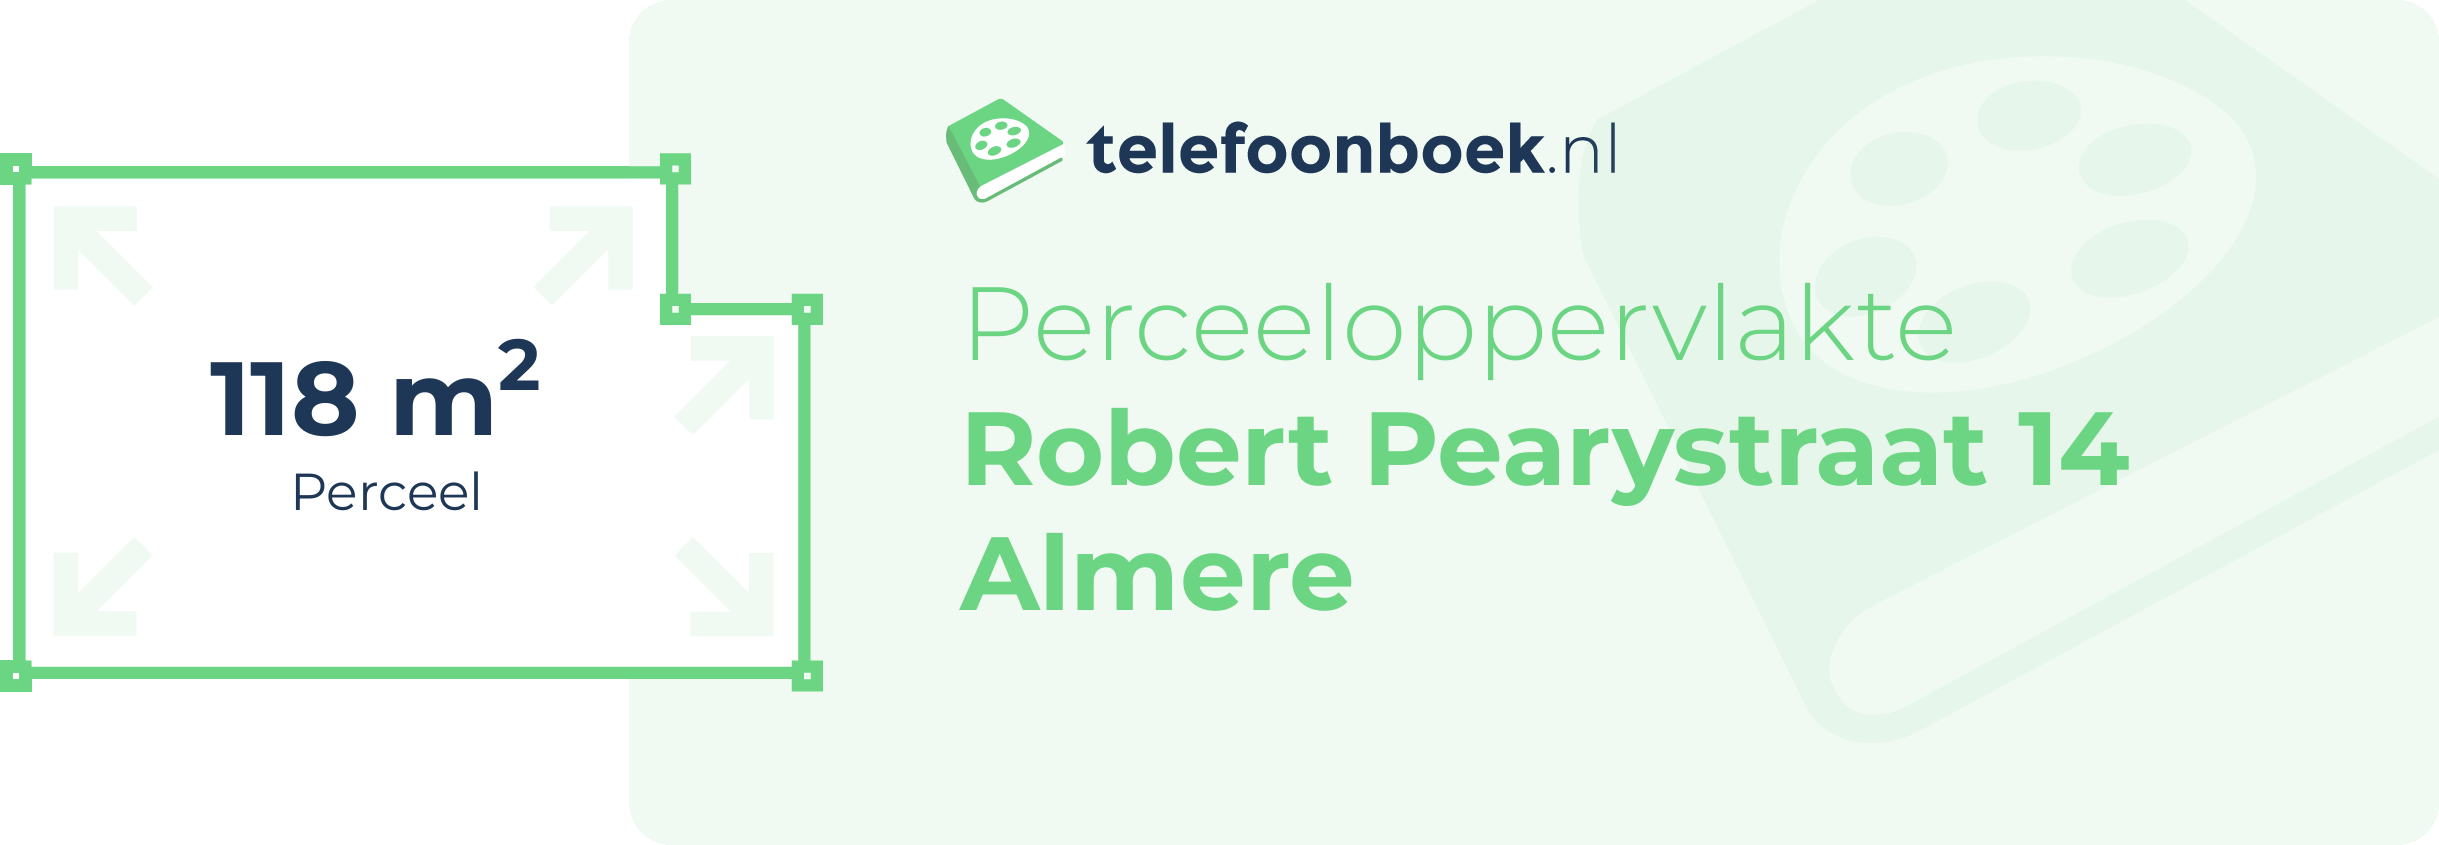 Perceeloppervlakte Robert Pearystraat 14 Almere